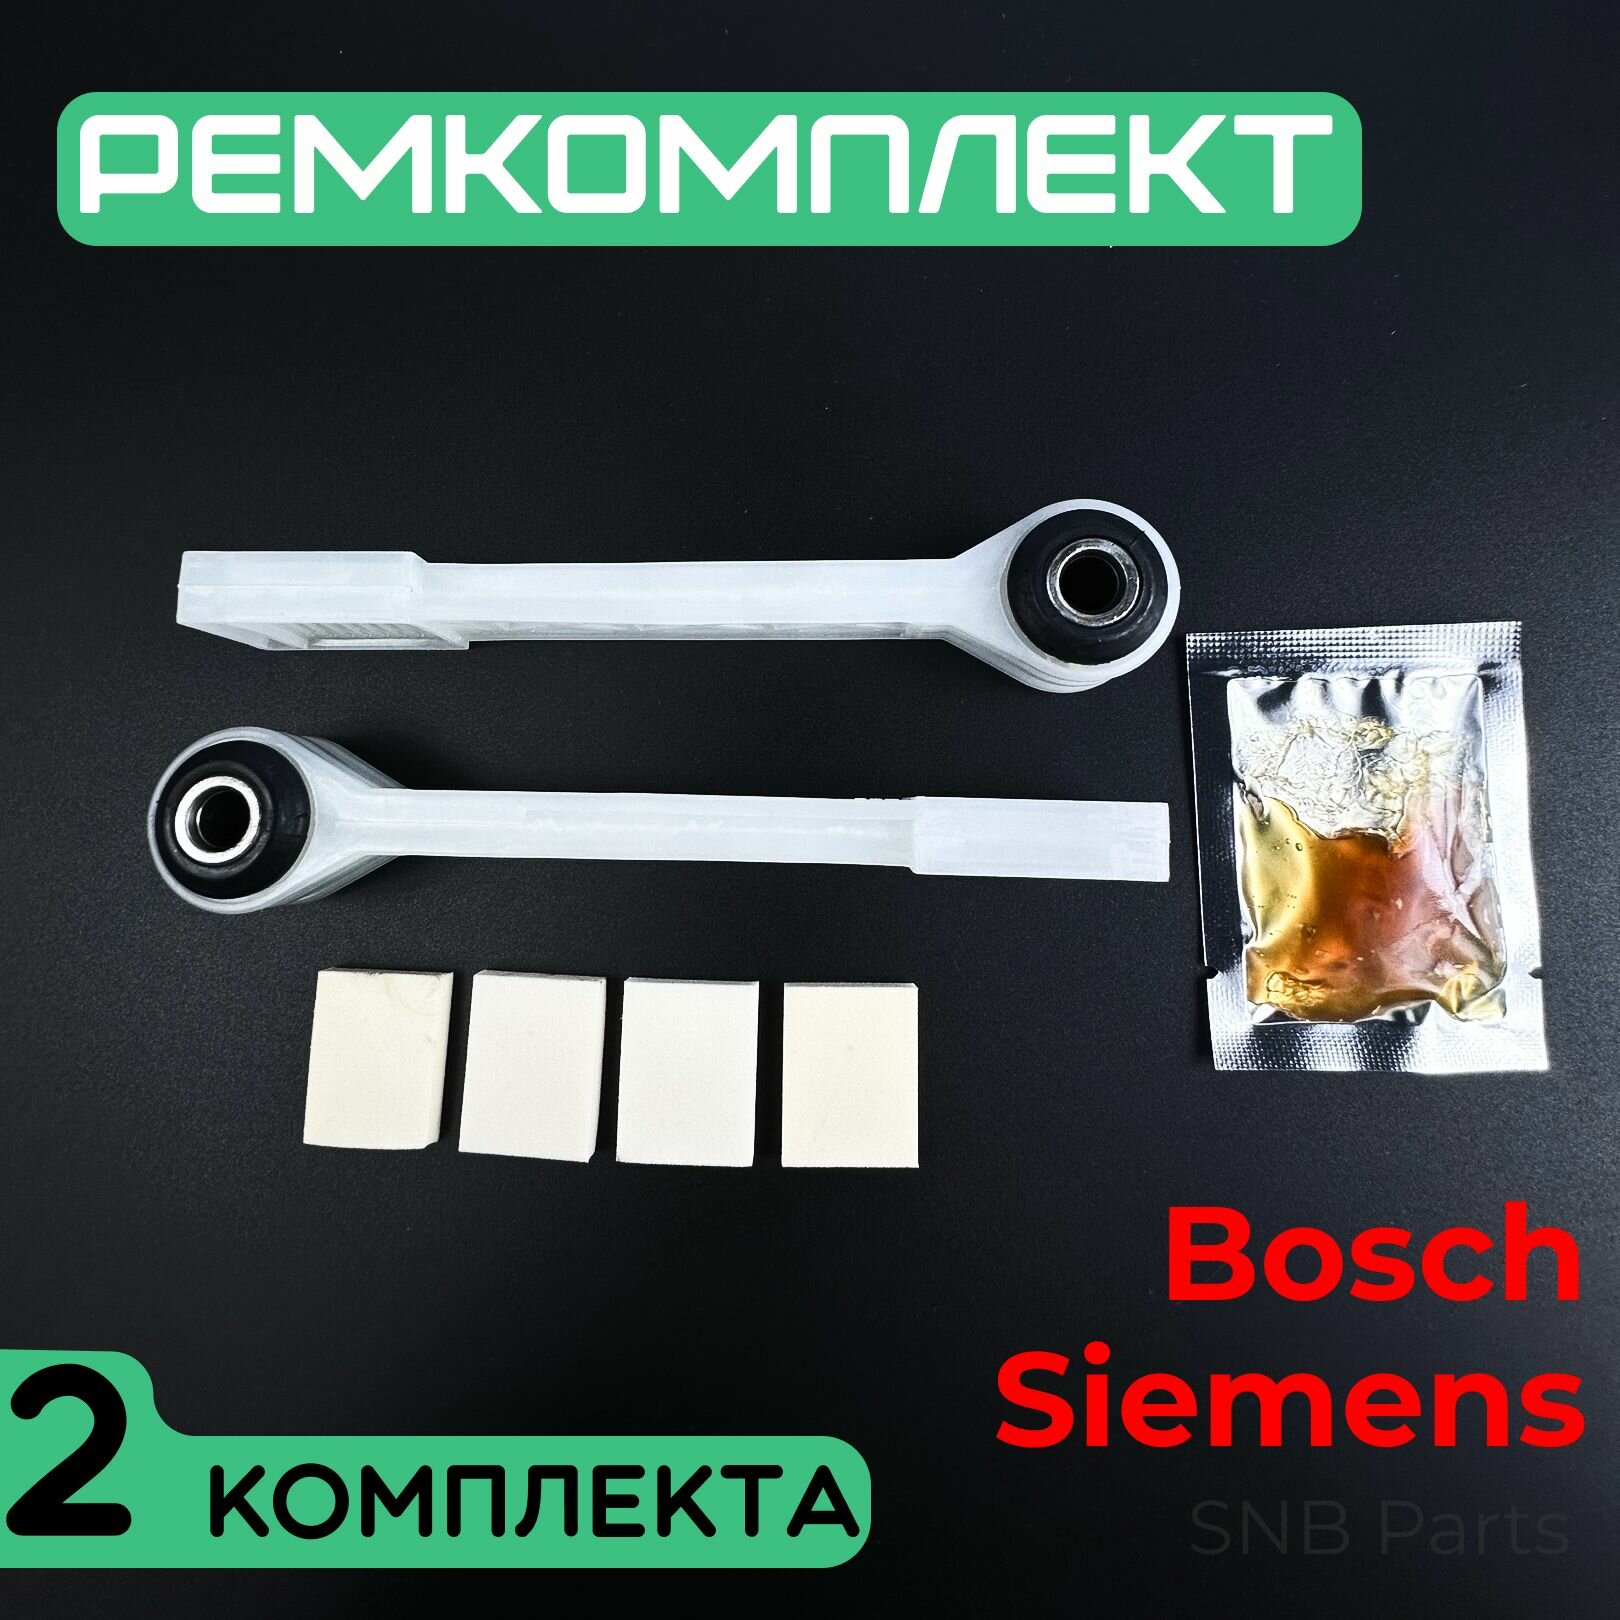 Ремкомплект амортизаторов для стиральной машины Bosch, Siemens, Neff. Два комплекта по 2 шт. Универсальная запчасть для СМА Бош, Сименс. SAR900UN, 673541